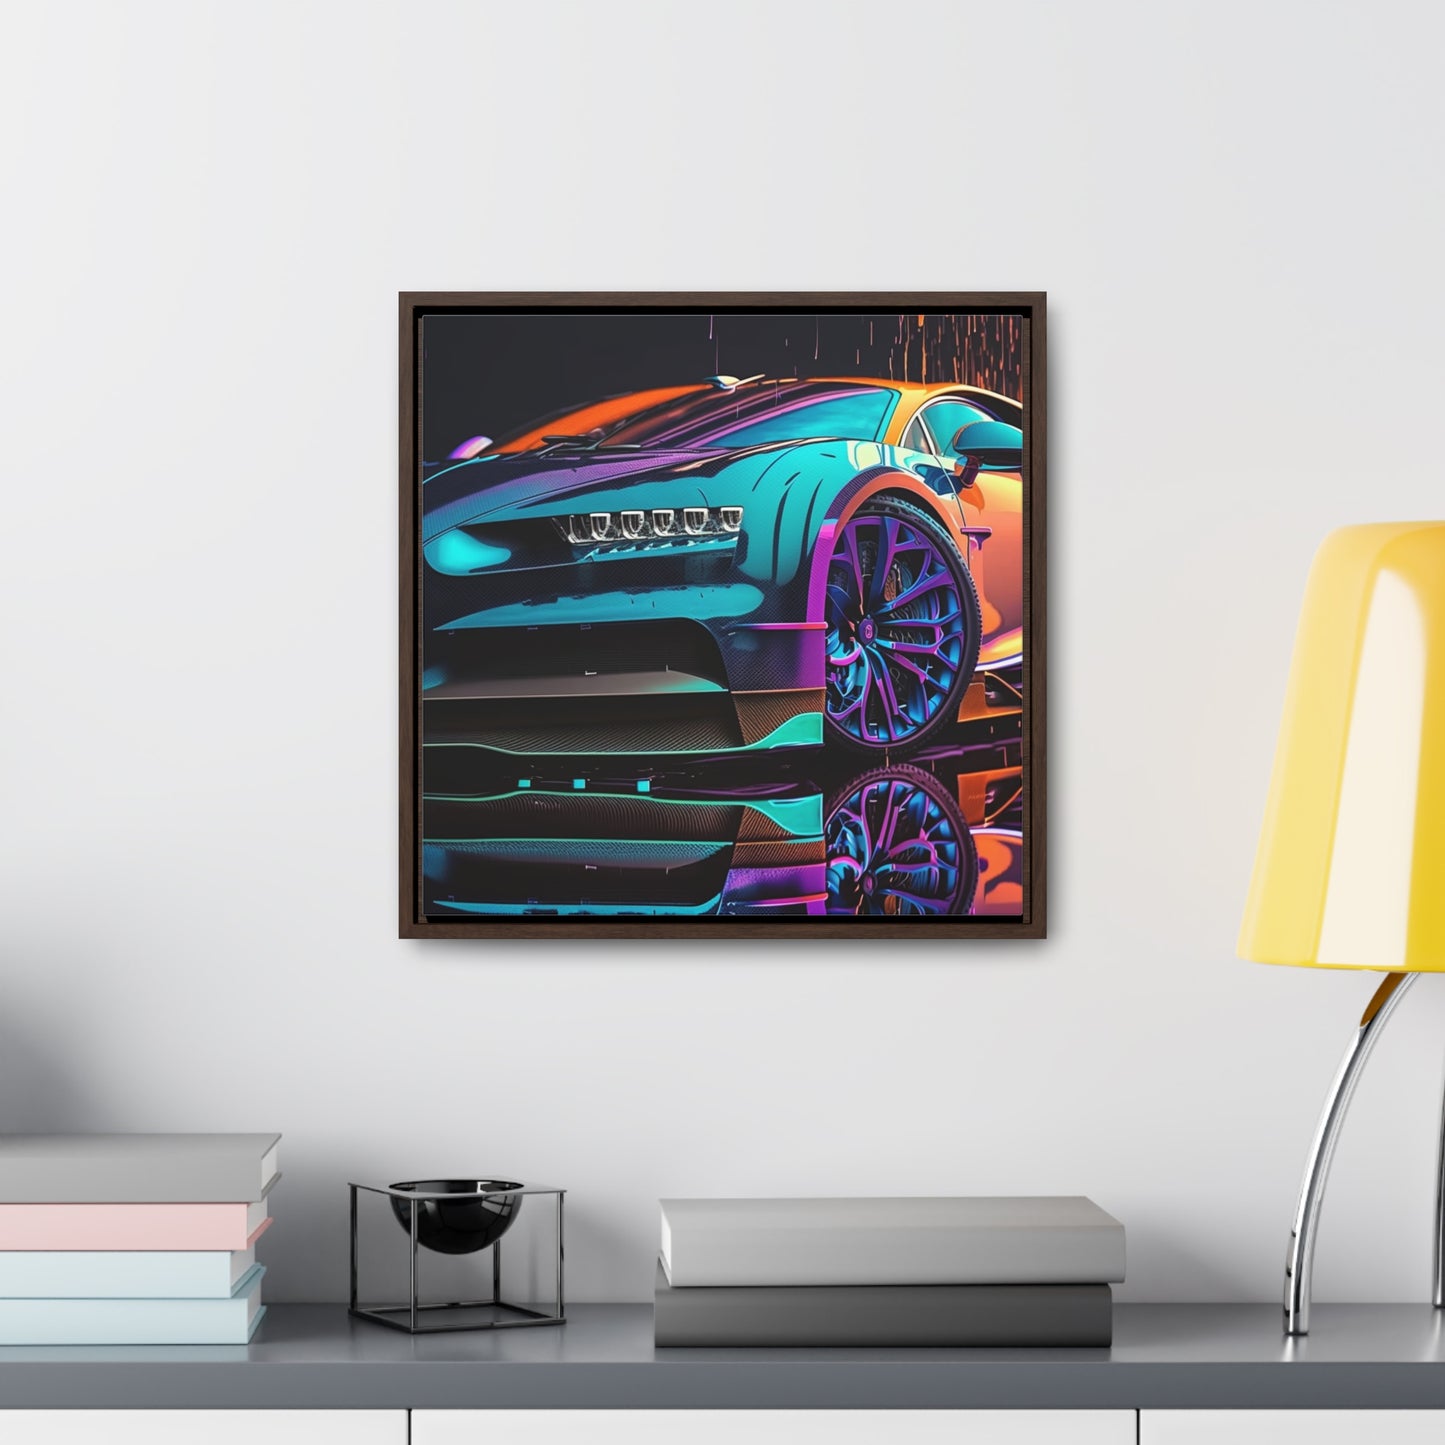 Gallery Canvas Wraps, Square Frame Bugatti Neon Chiron 1